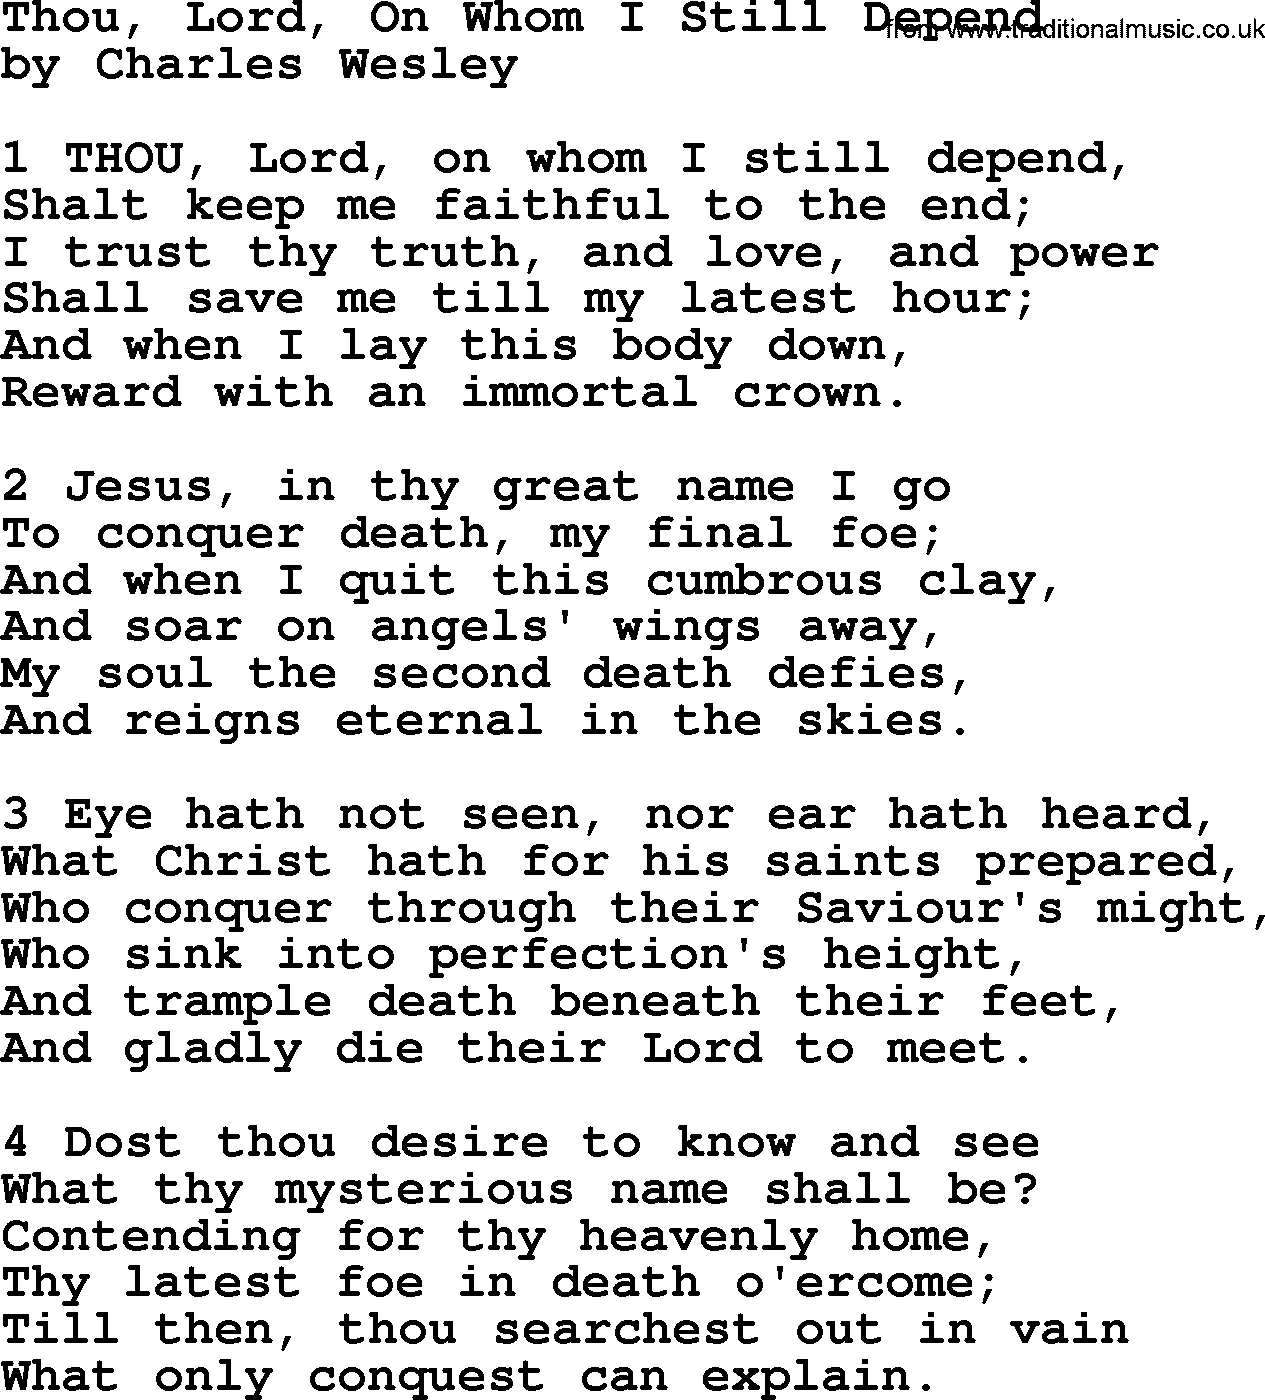 Charles Wesley hymn: Thou, Lord, On Whom I Still Depend, lyrics